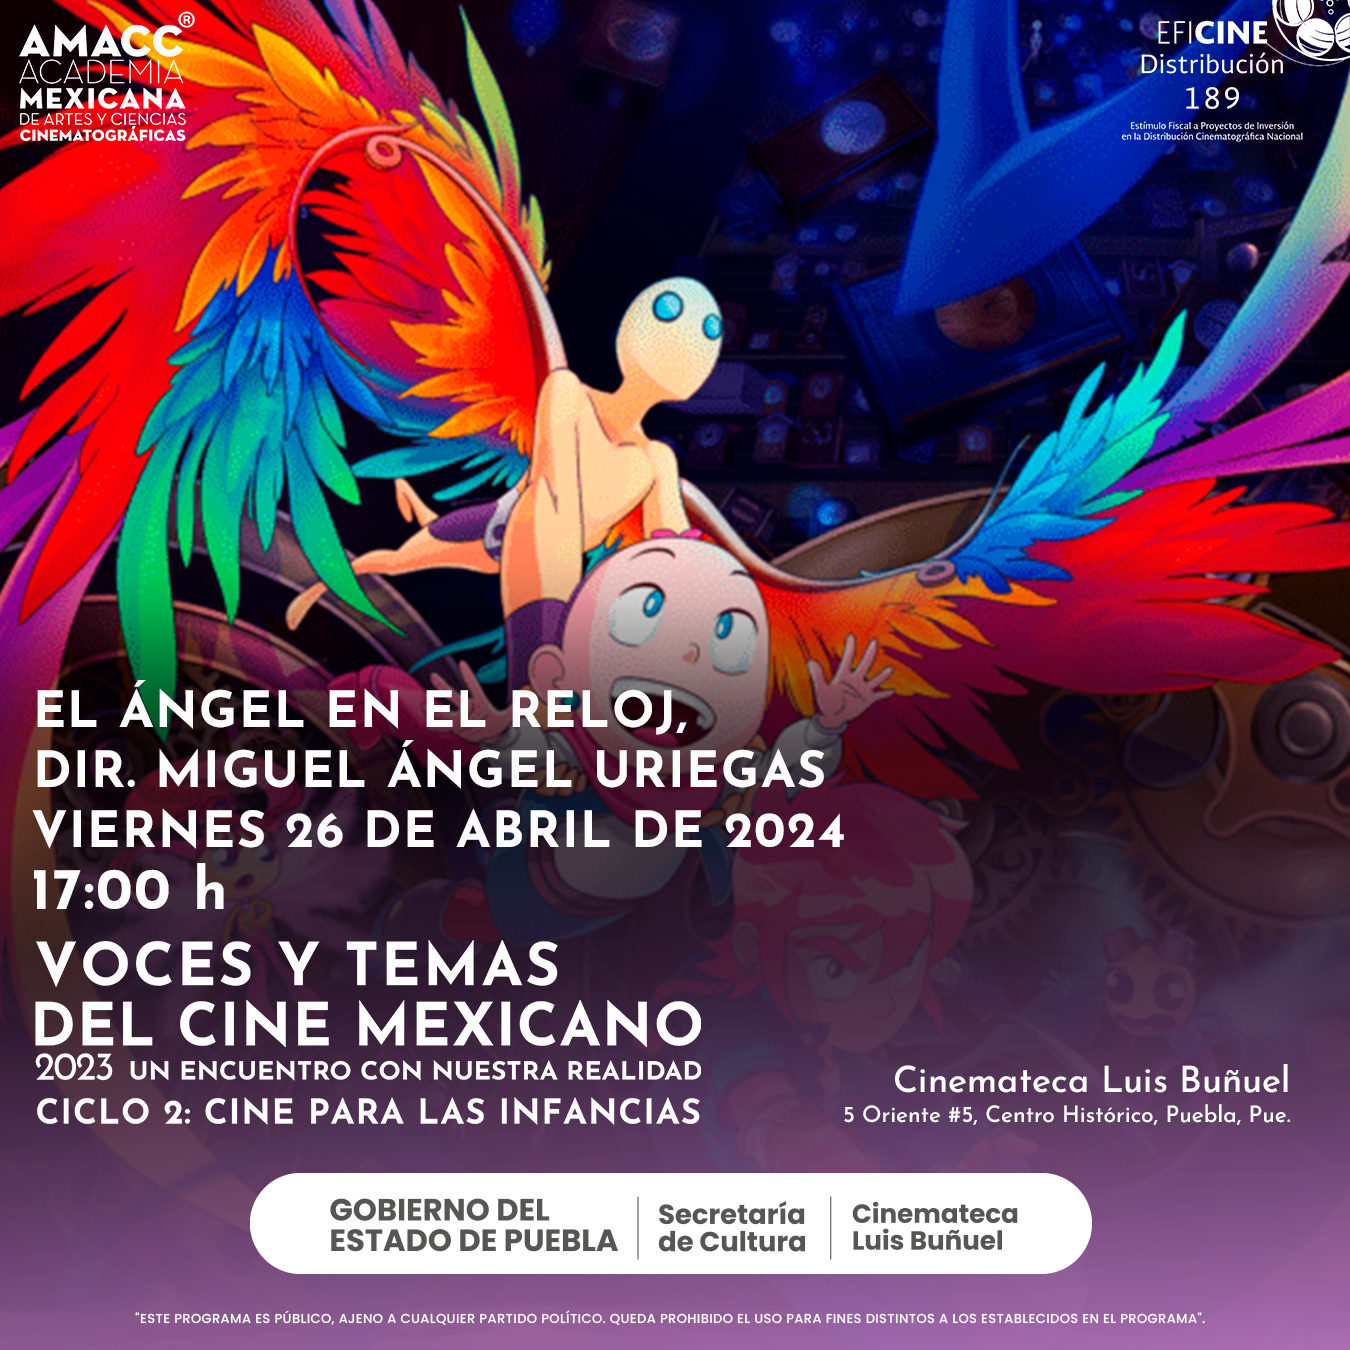 Exhibirá Cinemateca “Luis Buñuel” ciclo “Cine para las infancias”